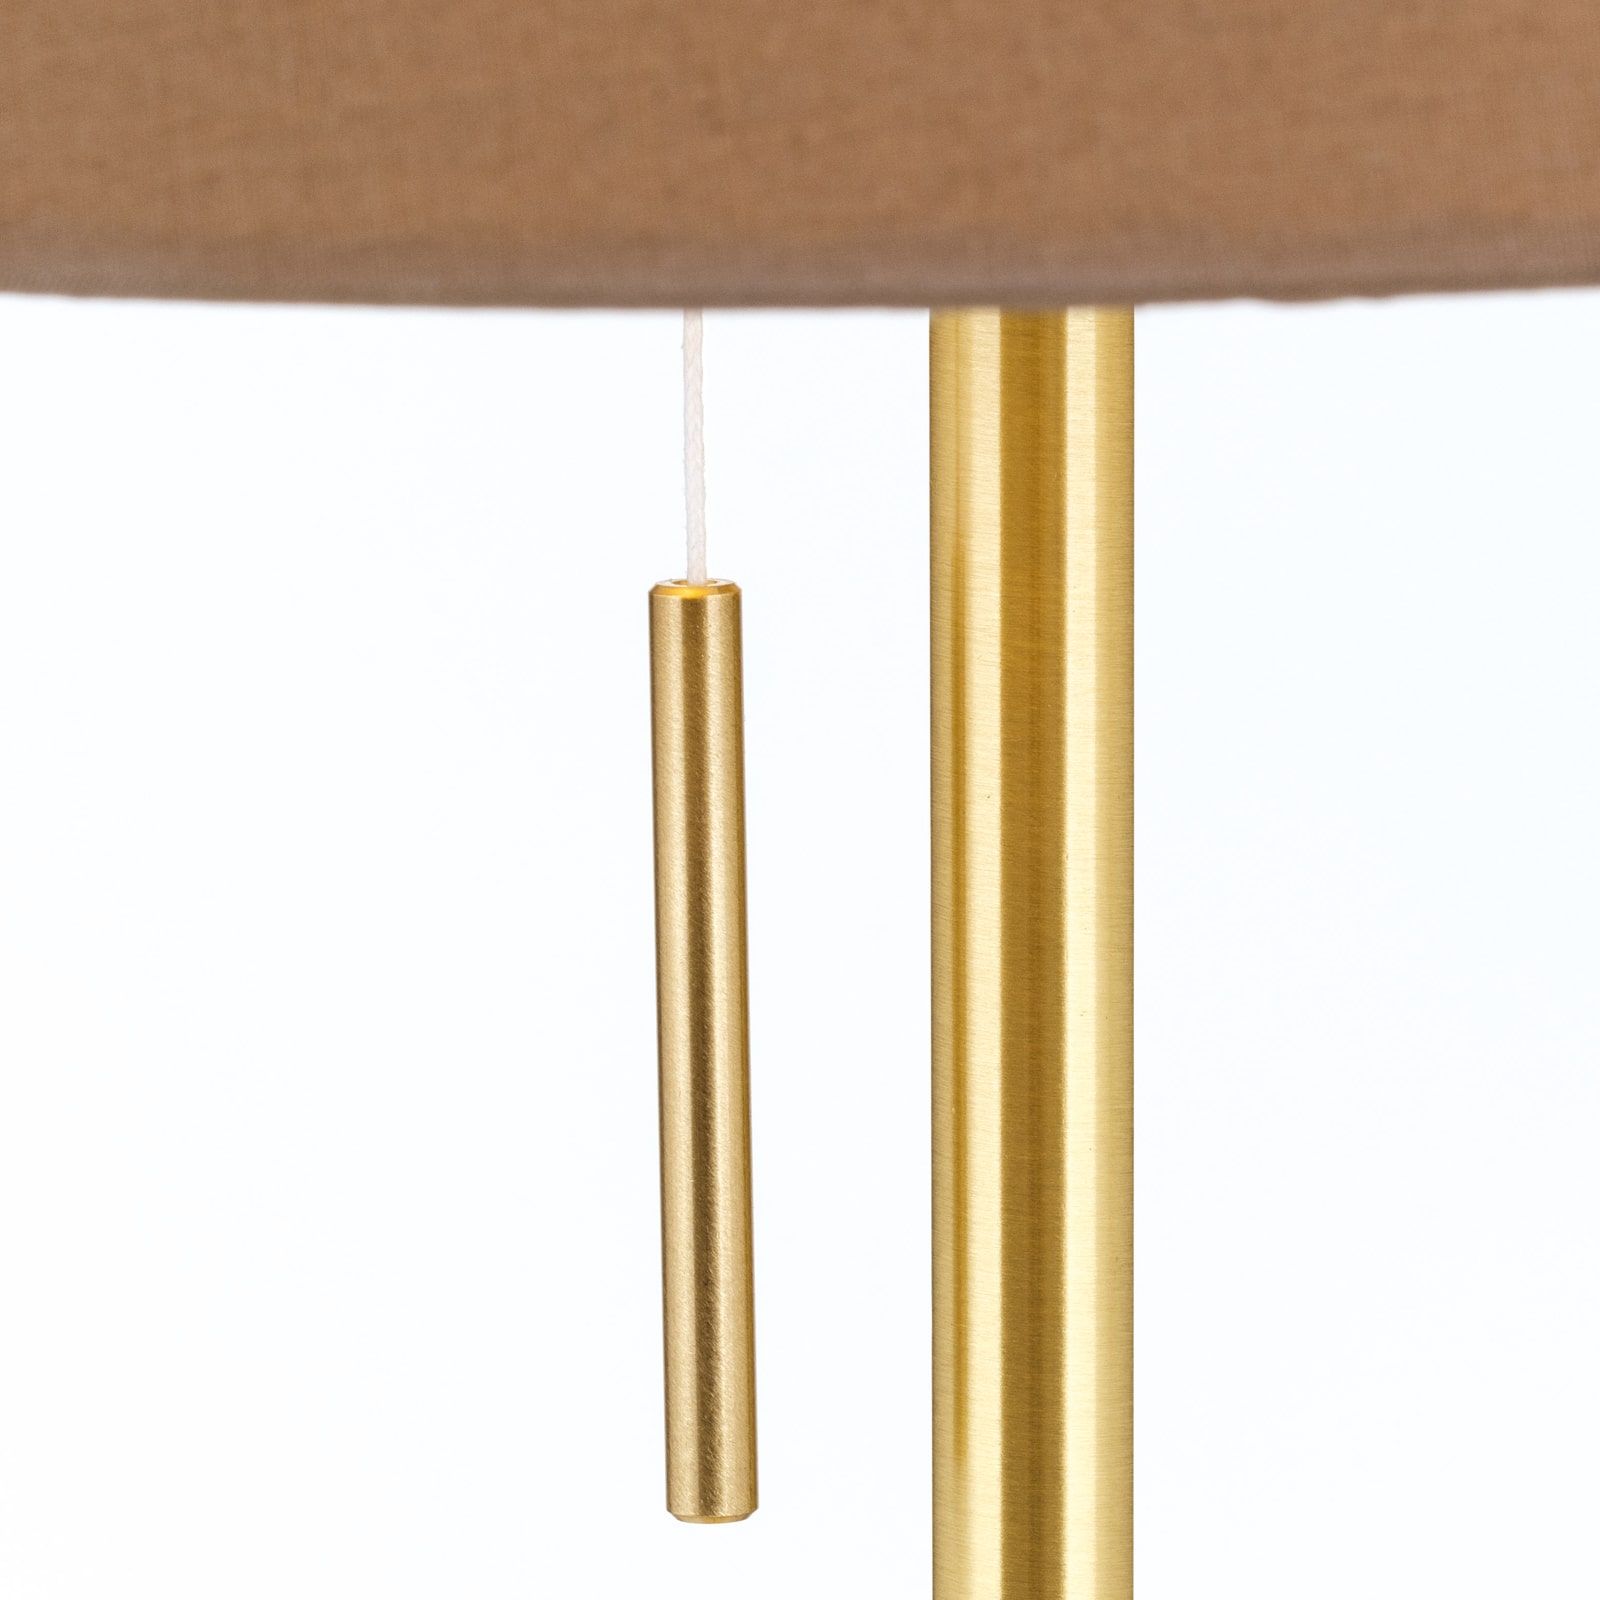 LED-Deckenleuchte SHADE, mit zylindrischem, braunem Schirm, Ø 40cm, Braun